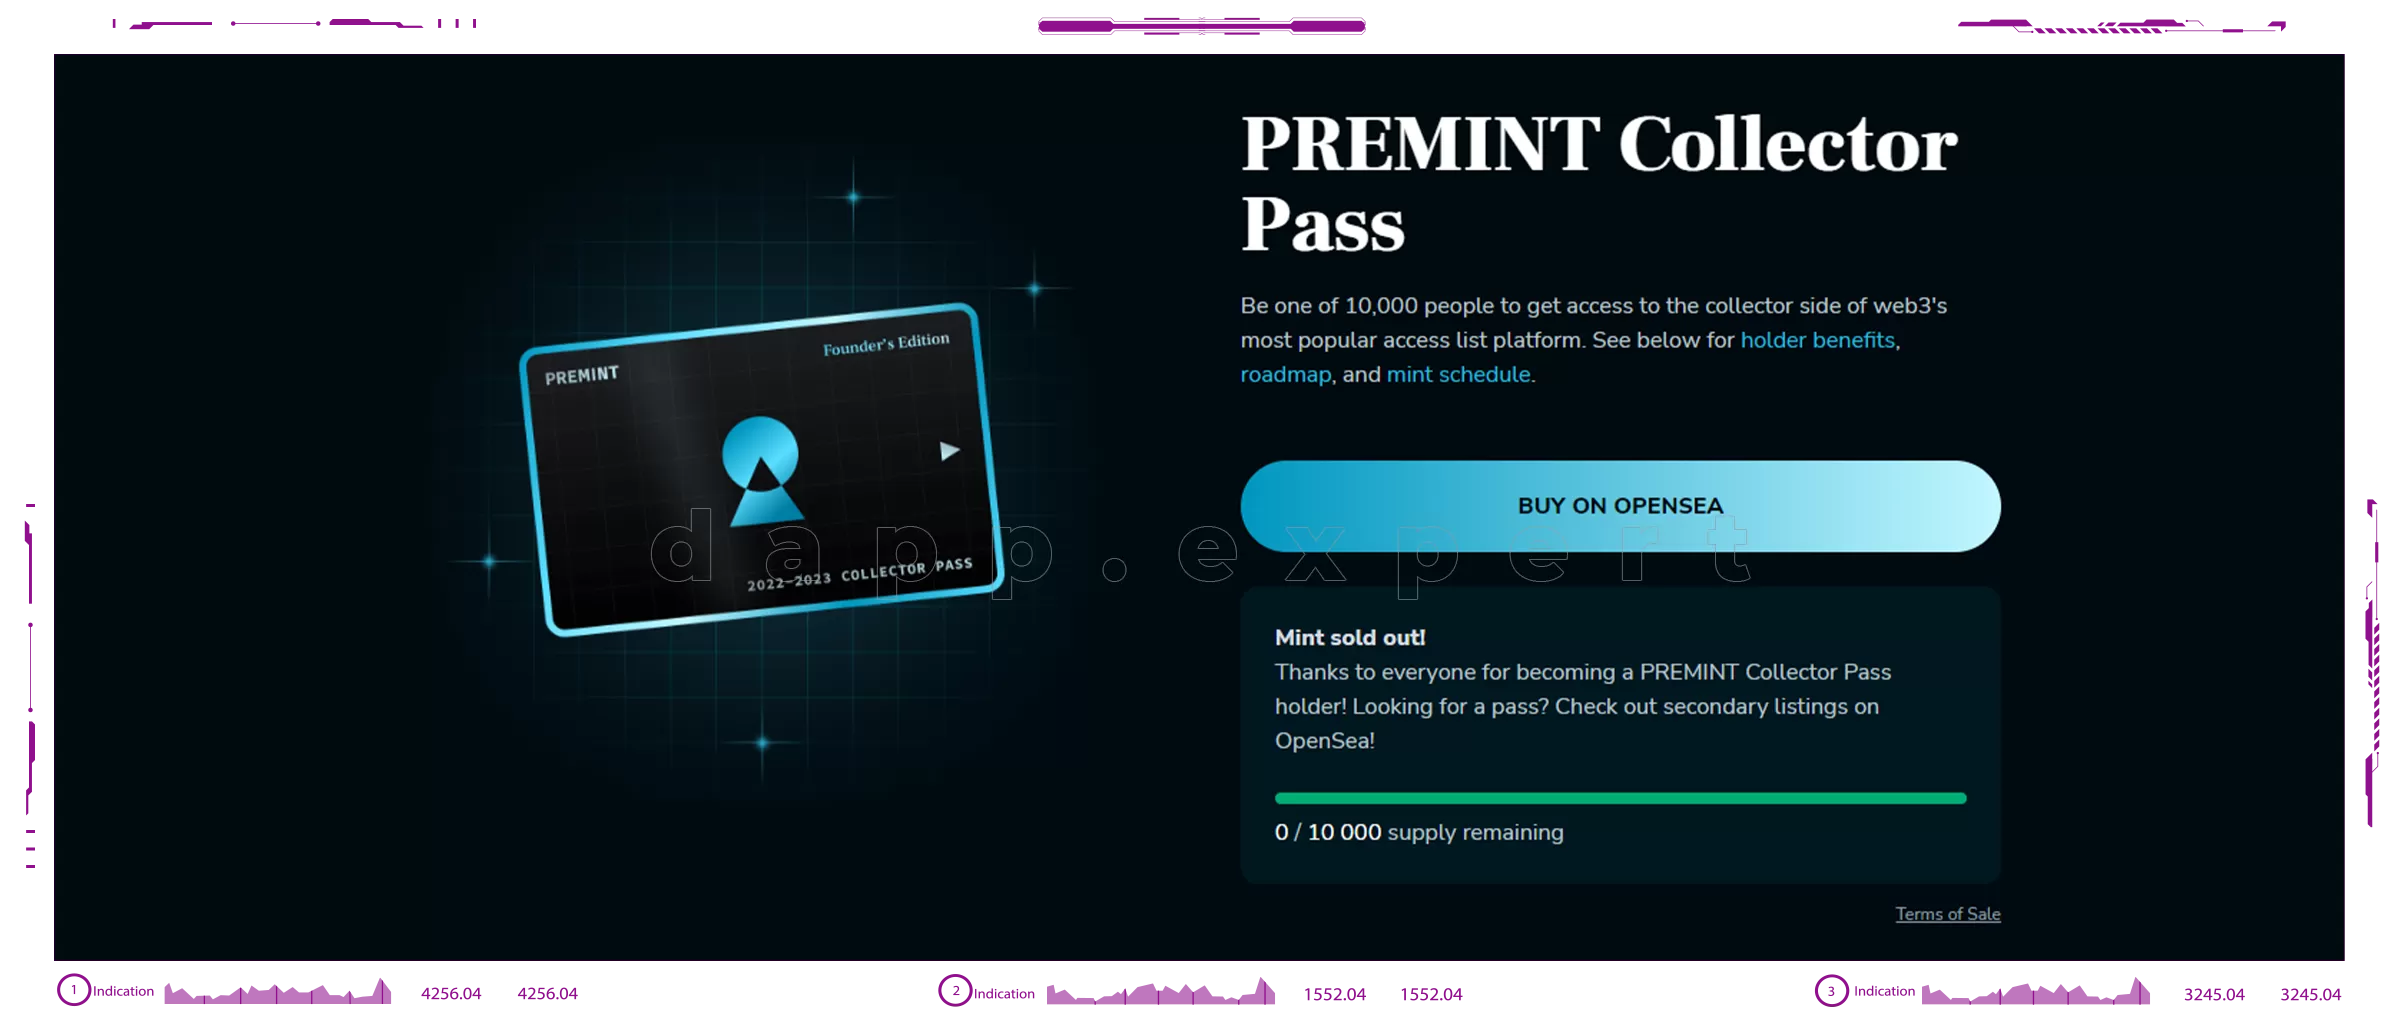 PREMINT Collector Pass dapps